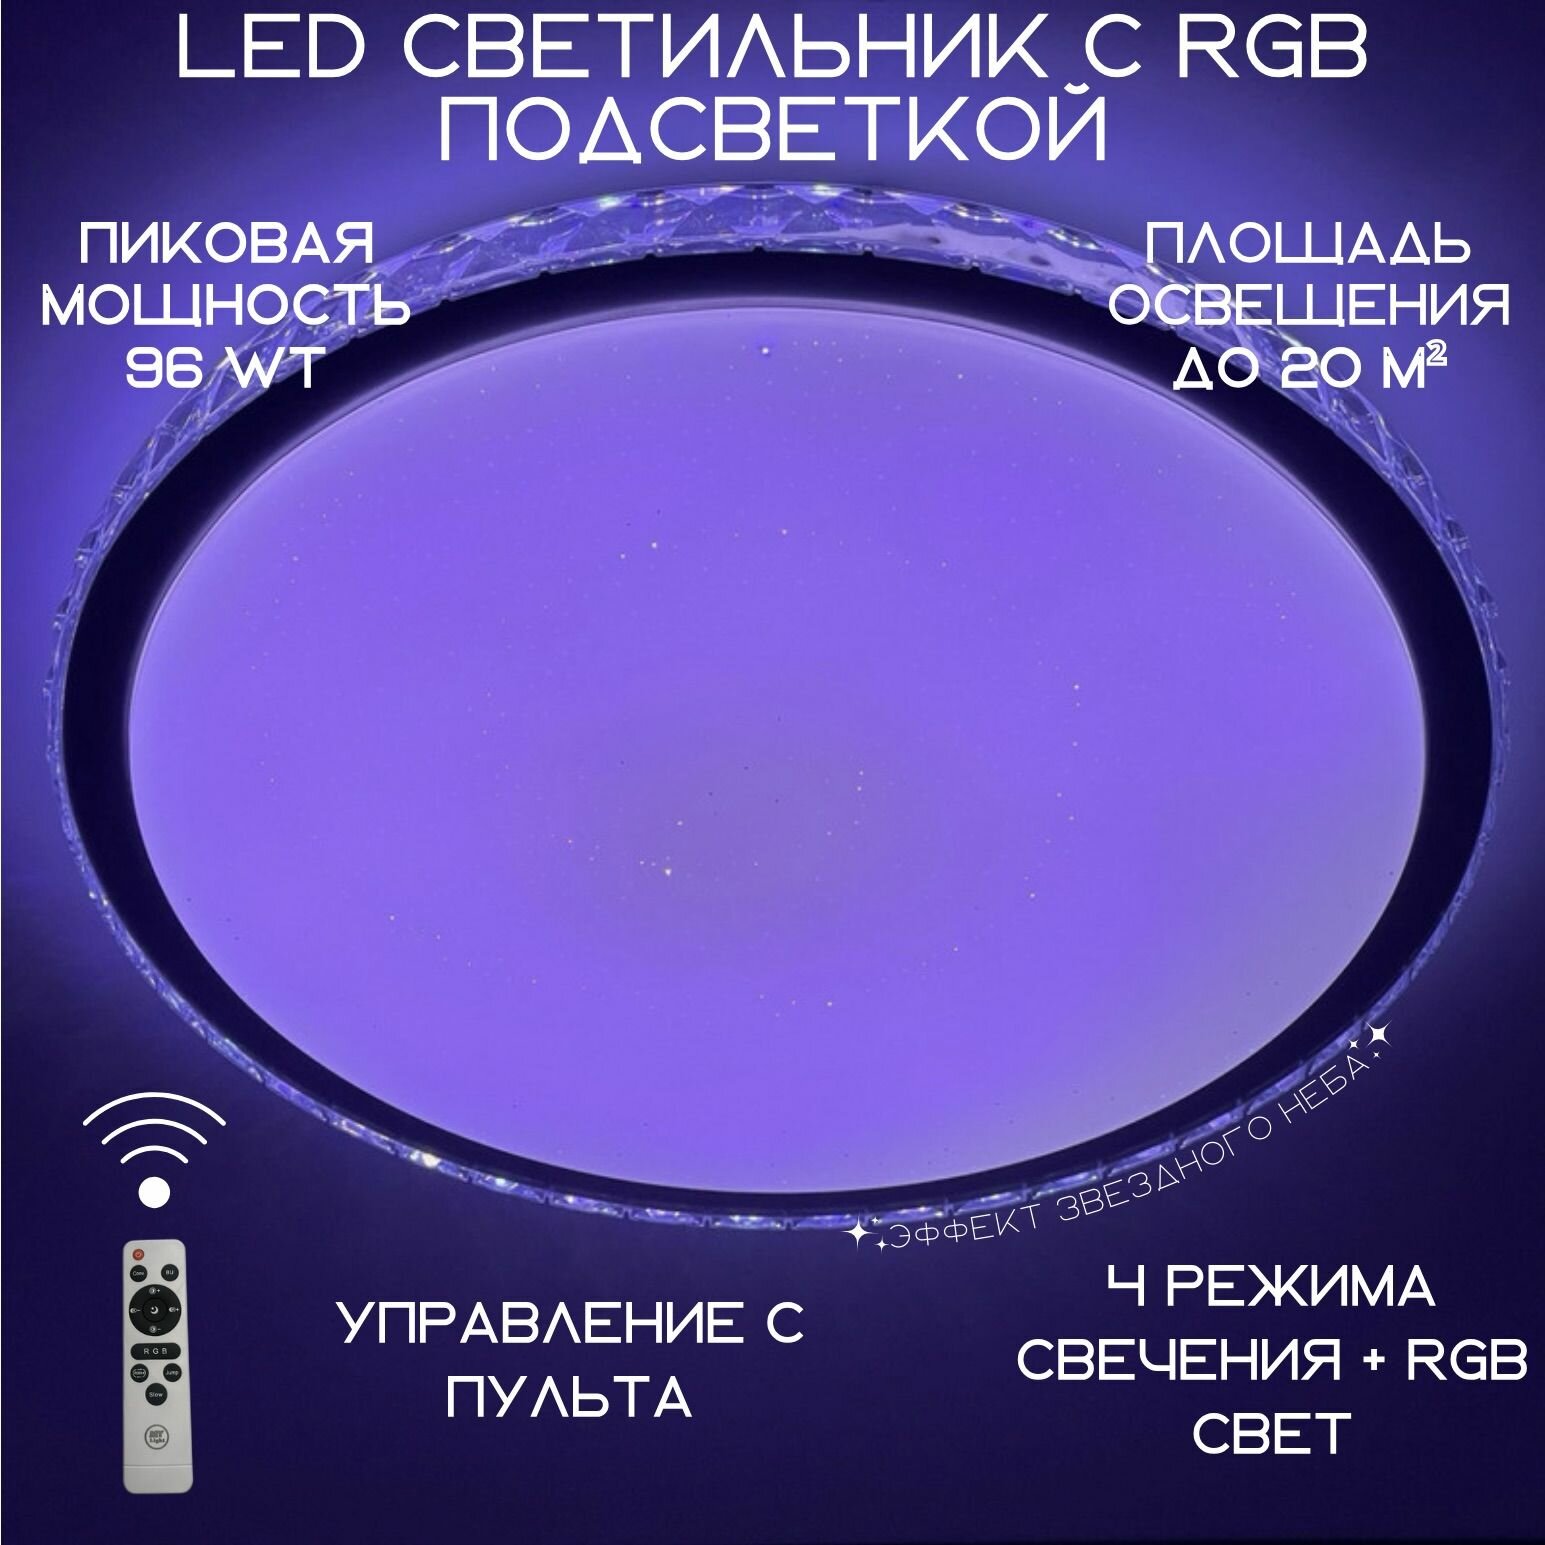 Люстра потолочная MyLight 1886-500 LED 96W RGB, светодиодная, круглая, с RGB подсветкой, белая, с пультом управления, для всех видов потолков, потолочный светильник